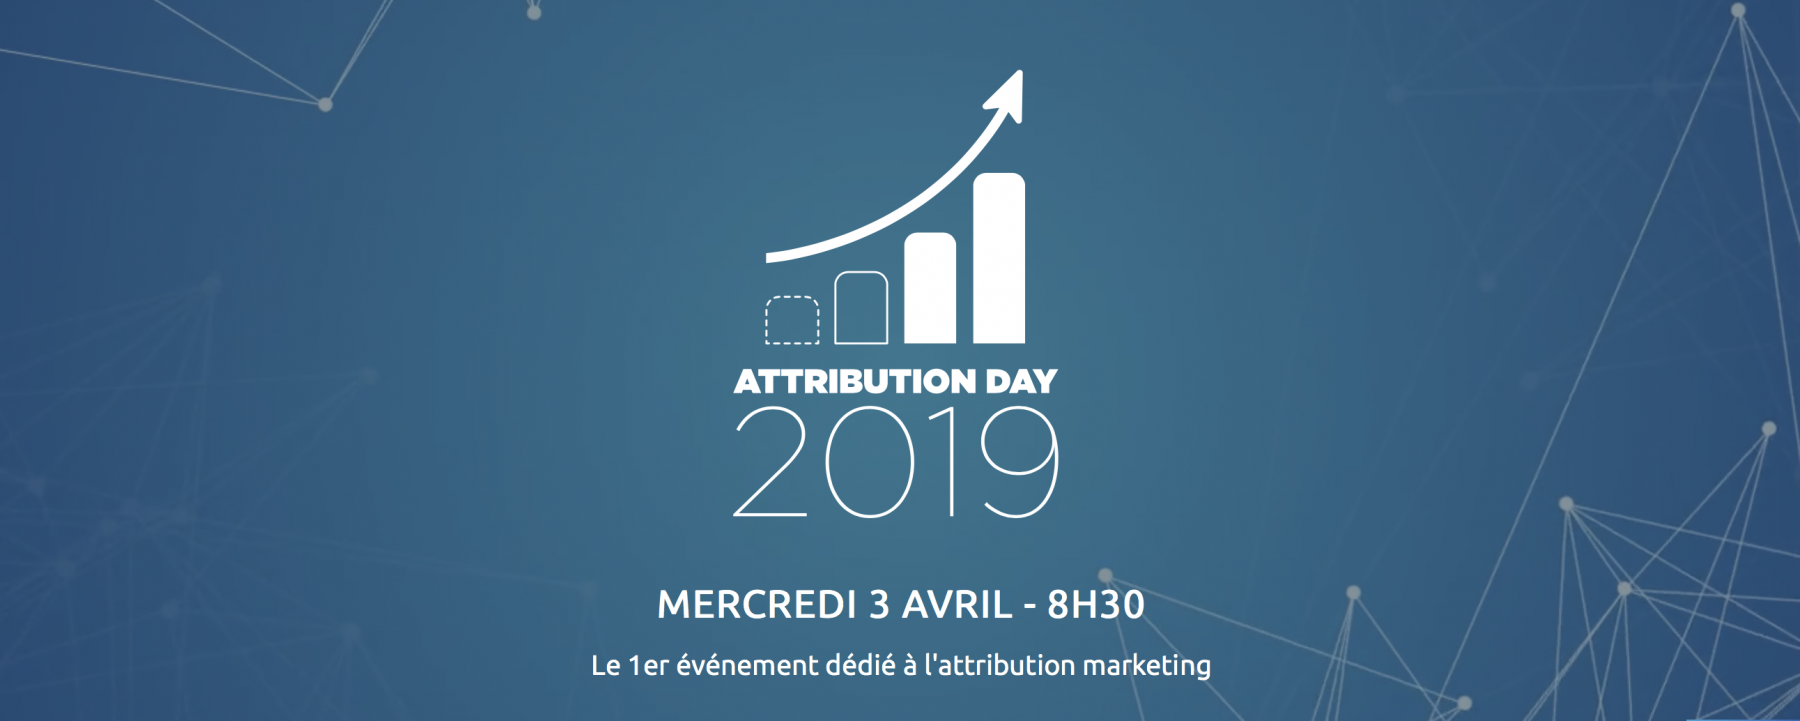 attribution day 2019